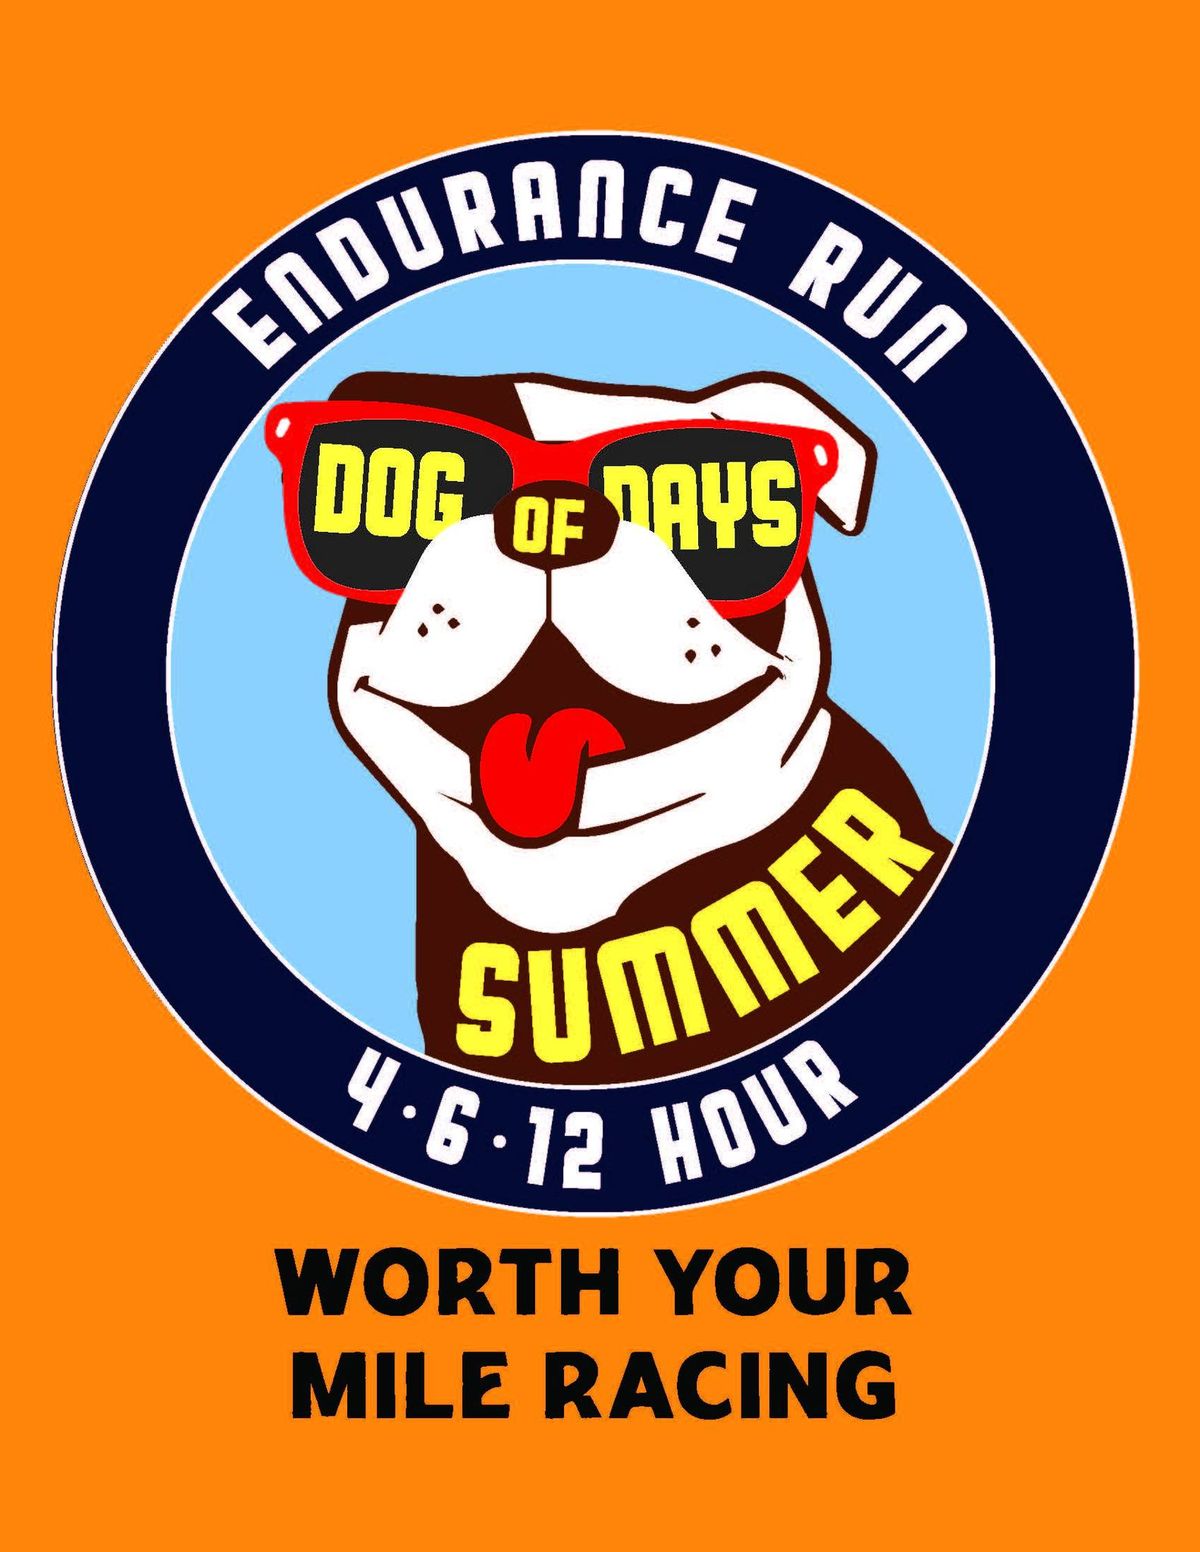 Dog Days of Summer Endurance Run